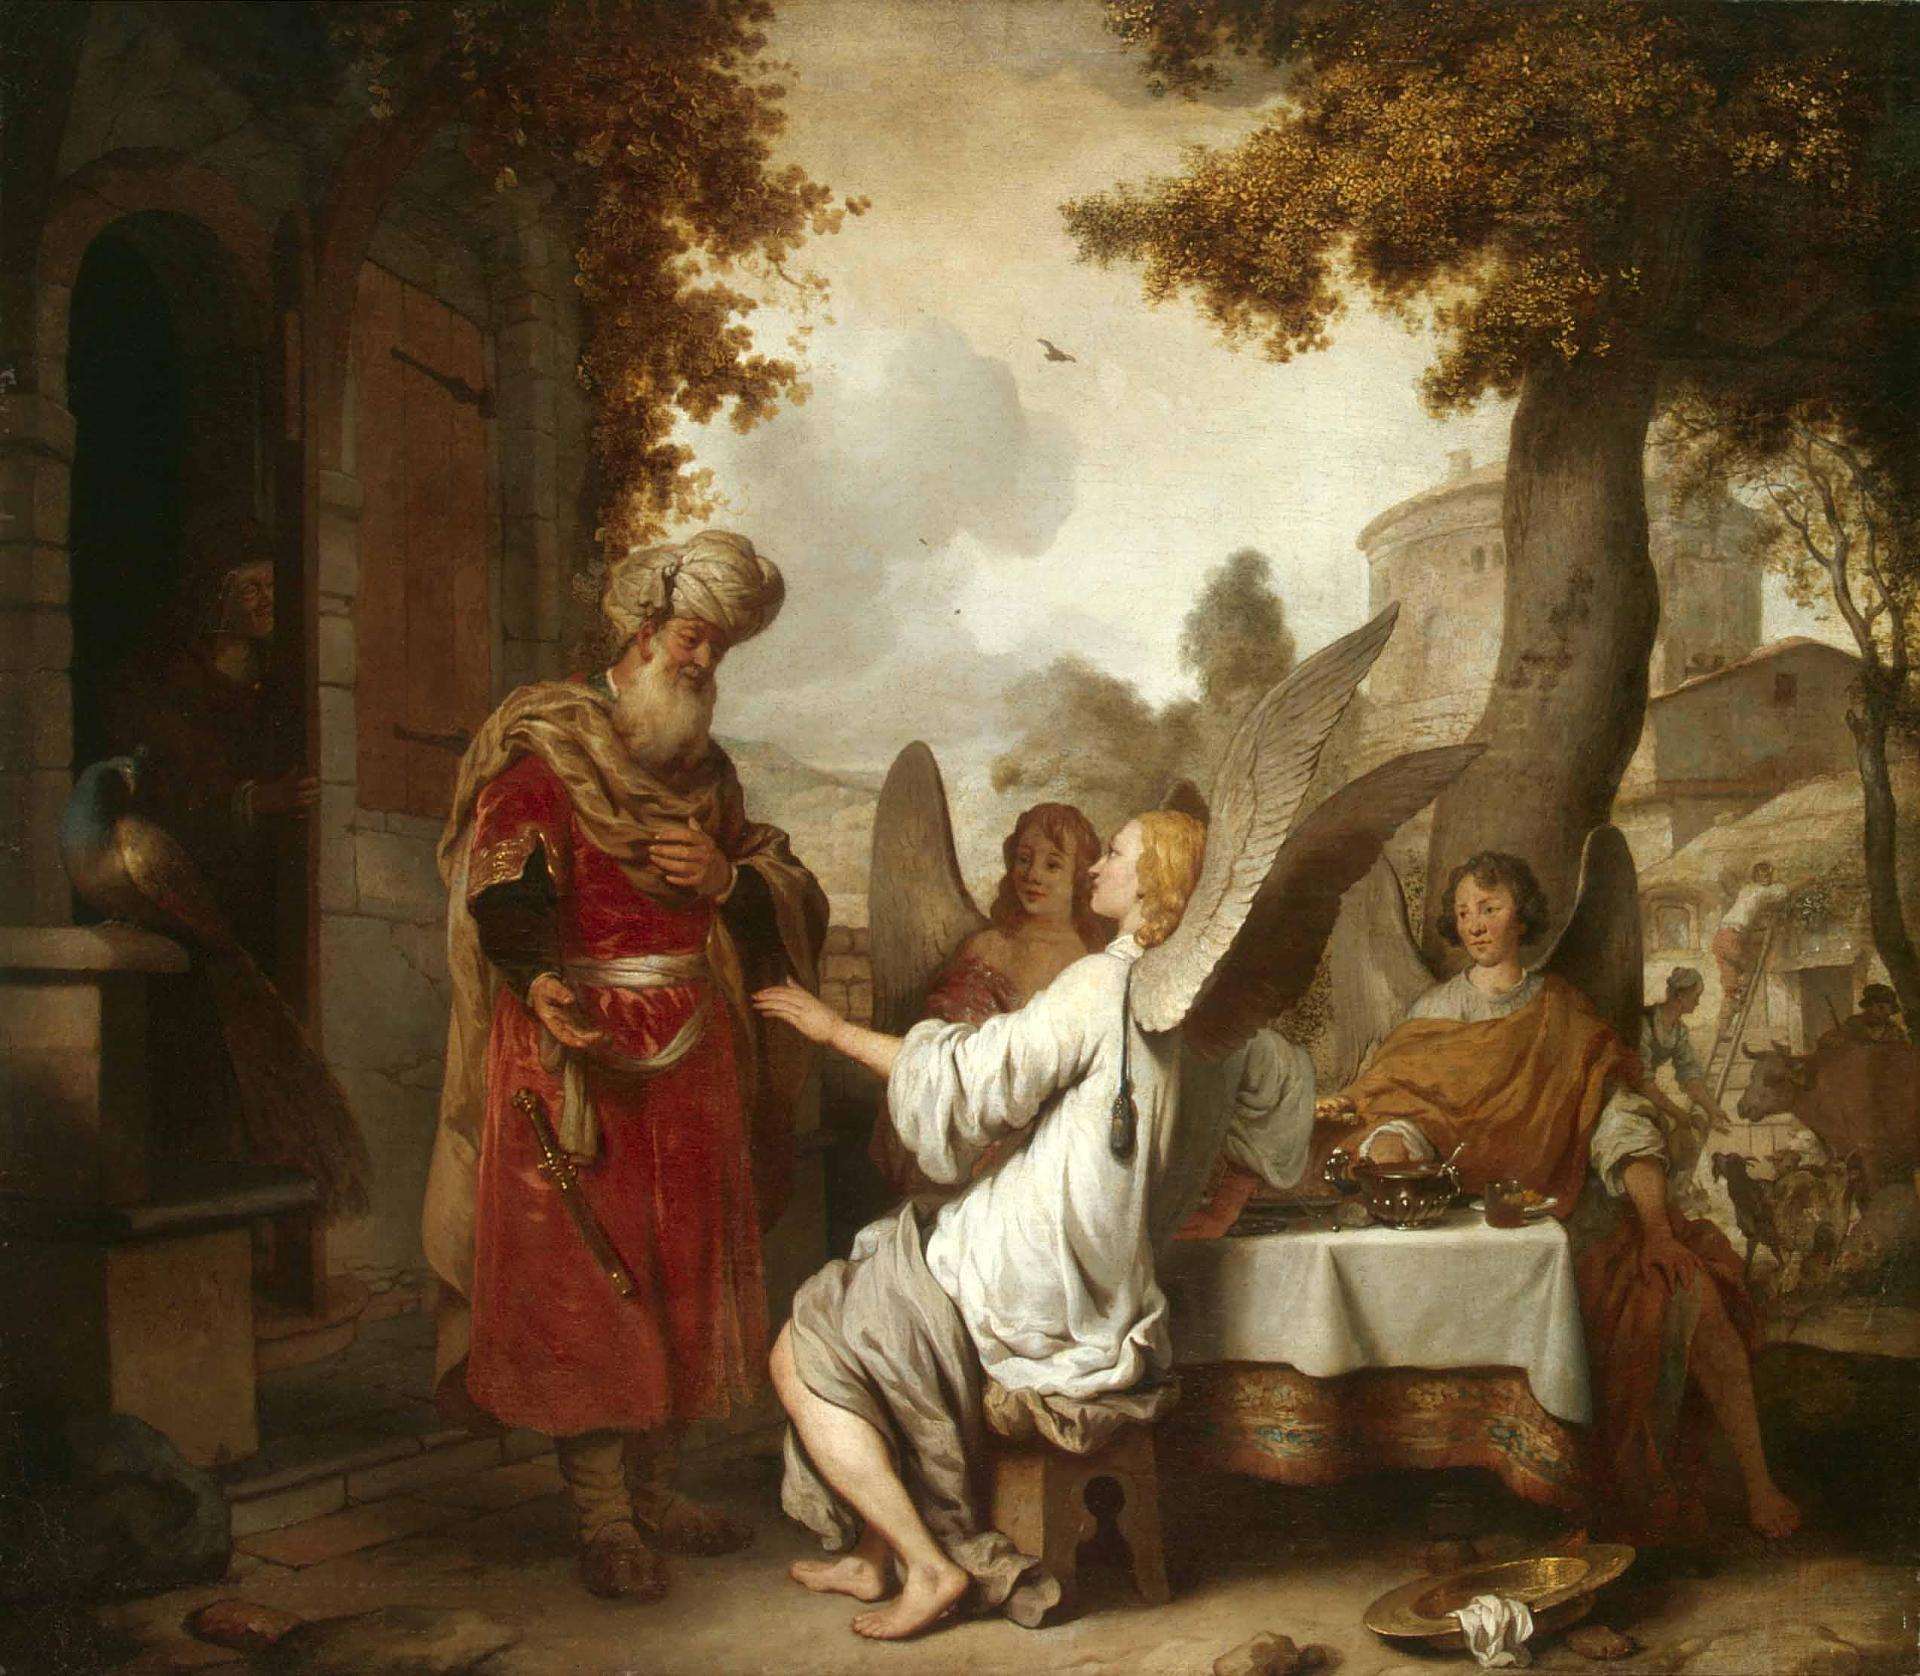 Гербрандт Янс ван ден Экхаут. "Авраам и три ангела". 1656.